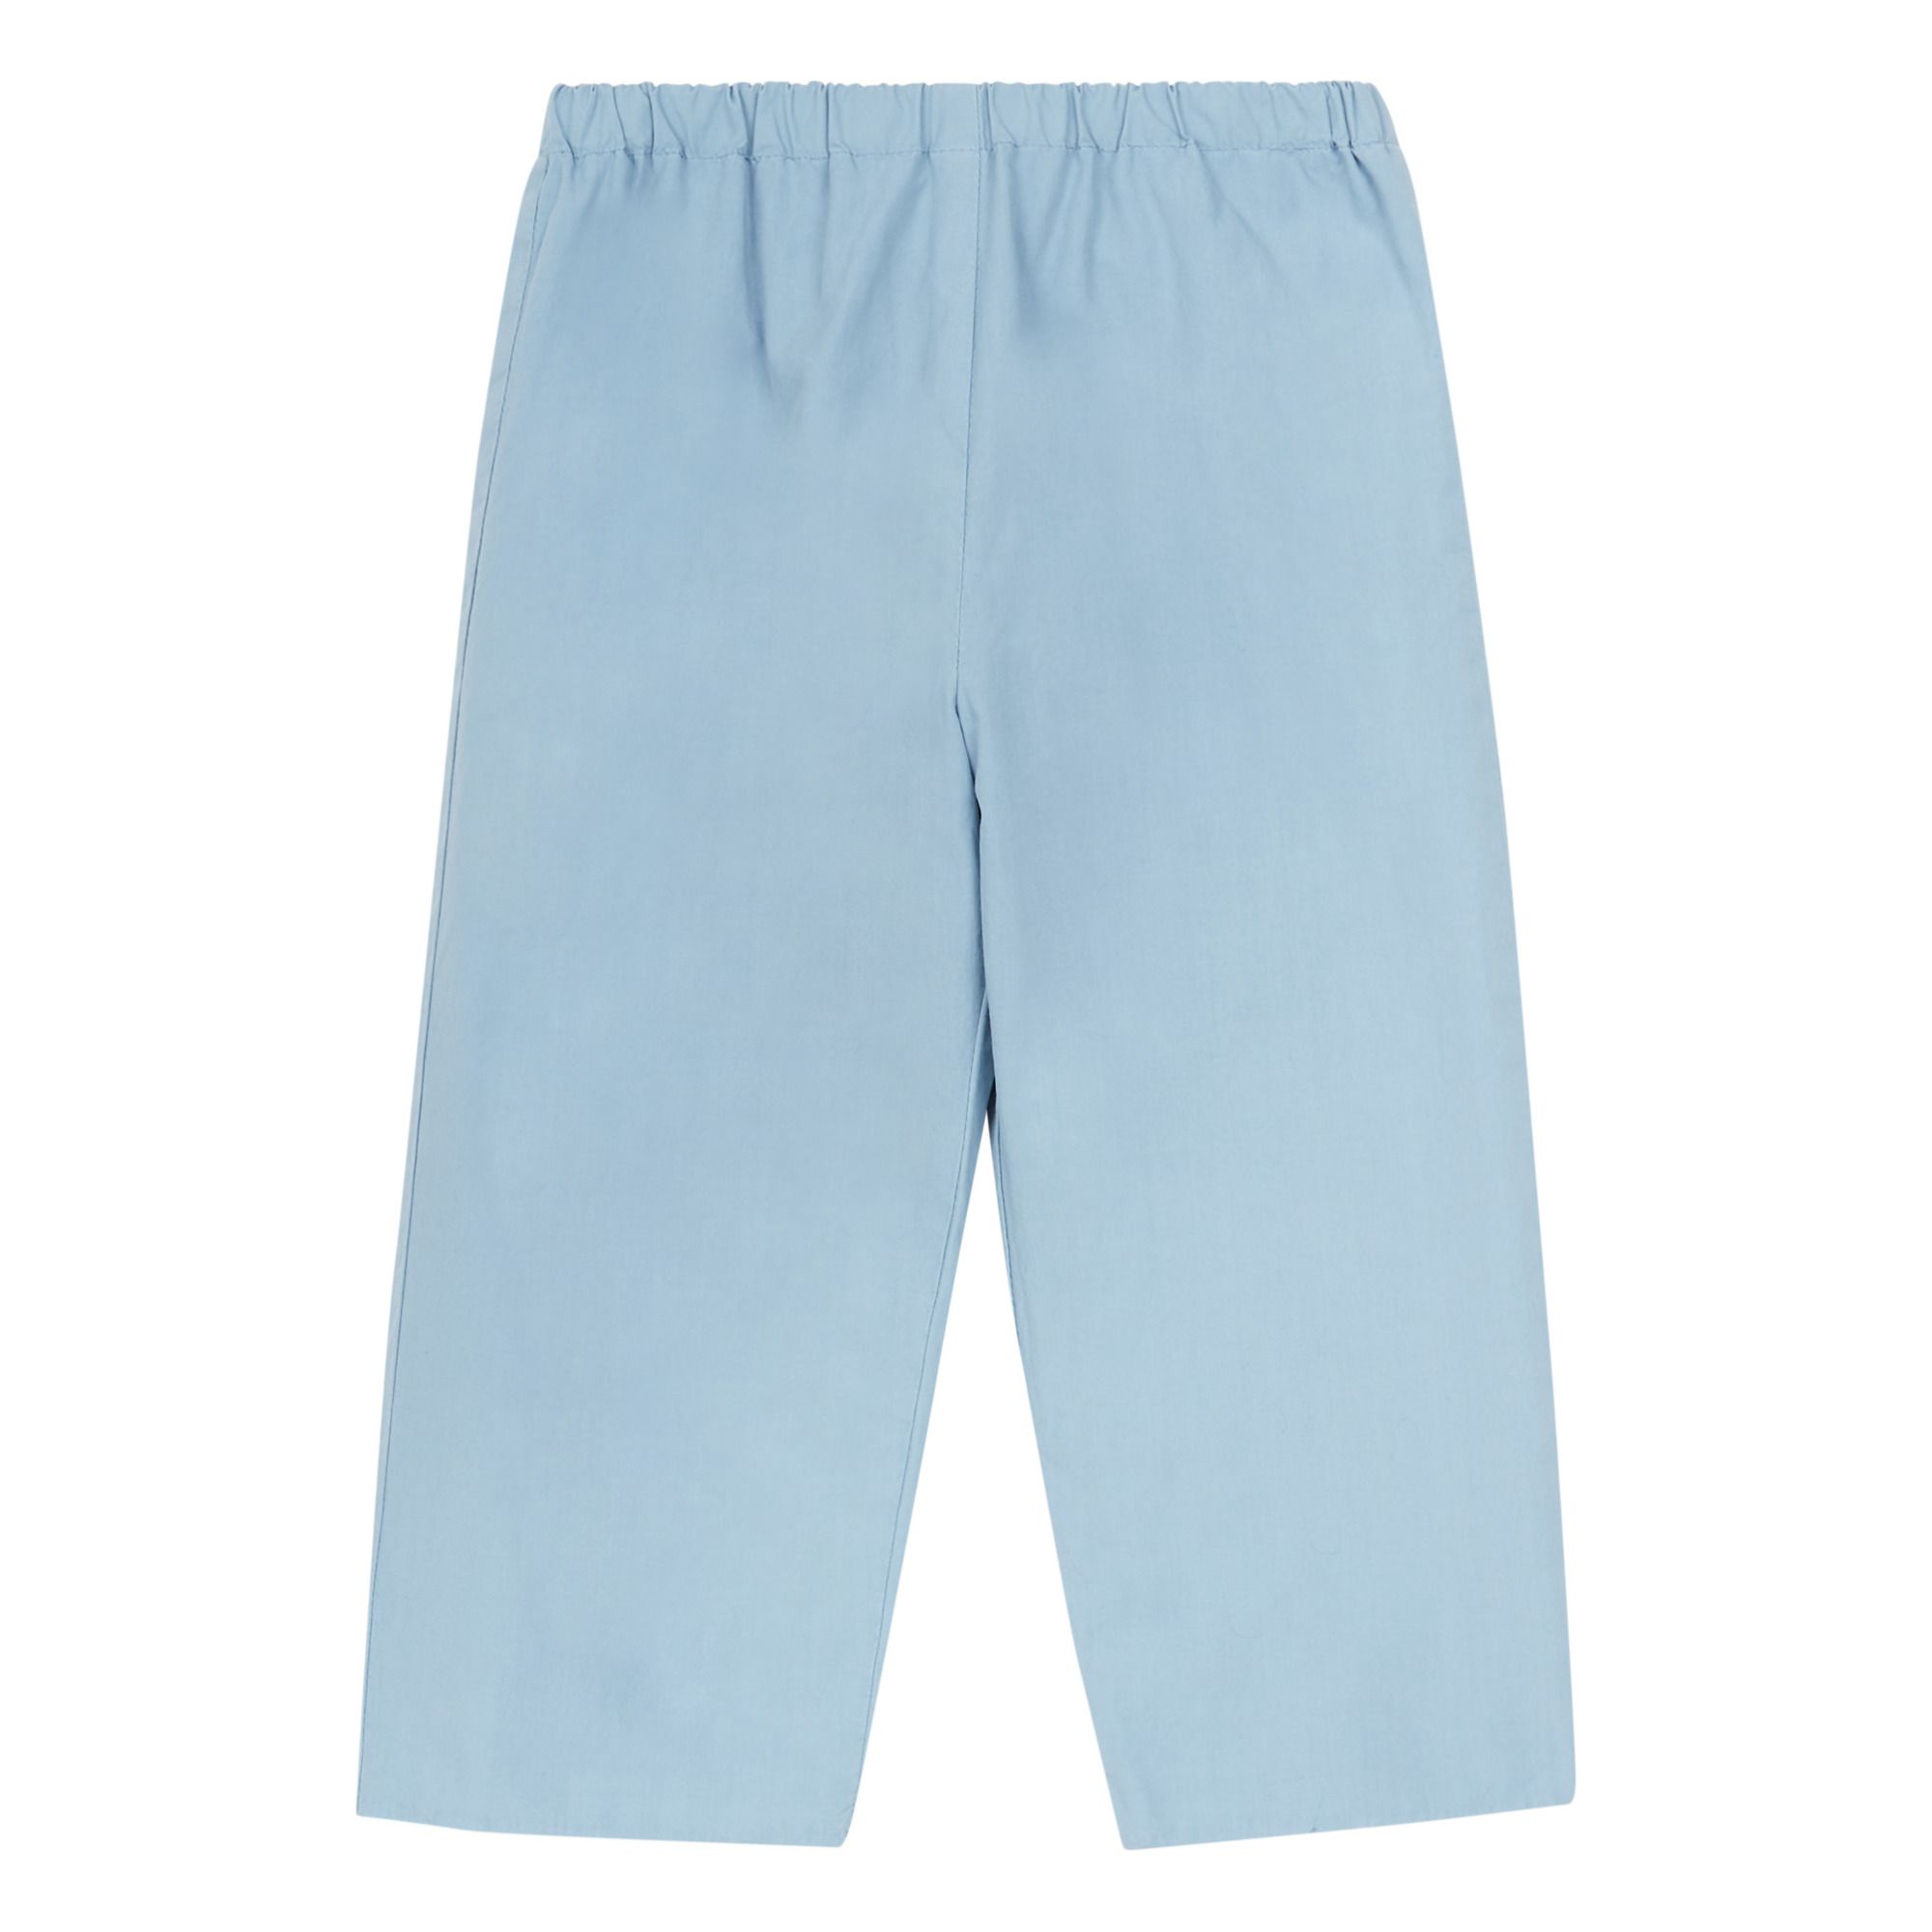 Bonpoint - Pantalon Dandy - Fille - Bleu gris